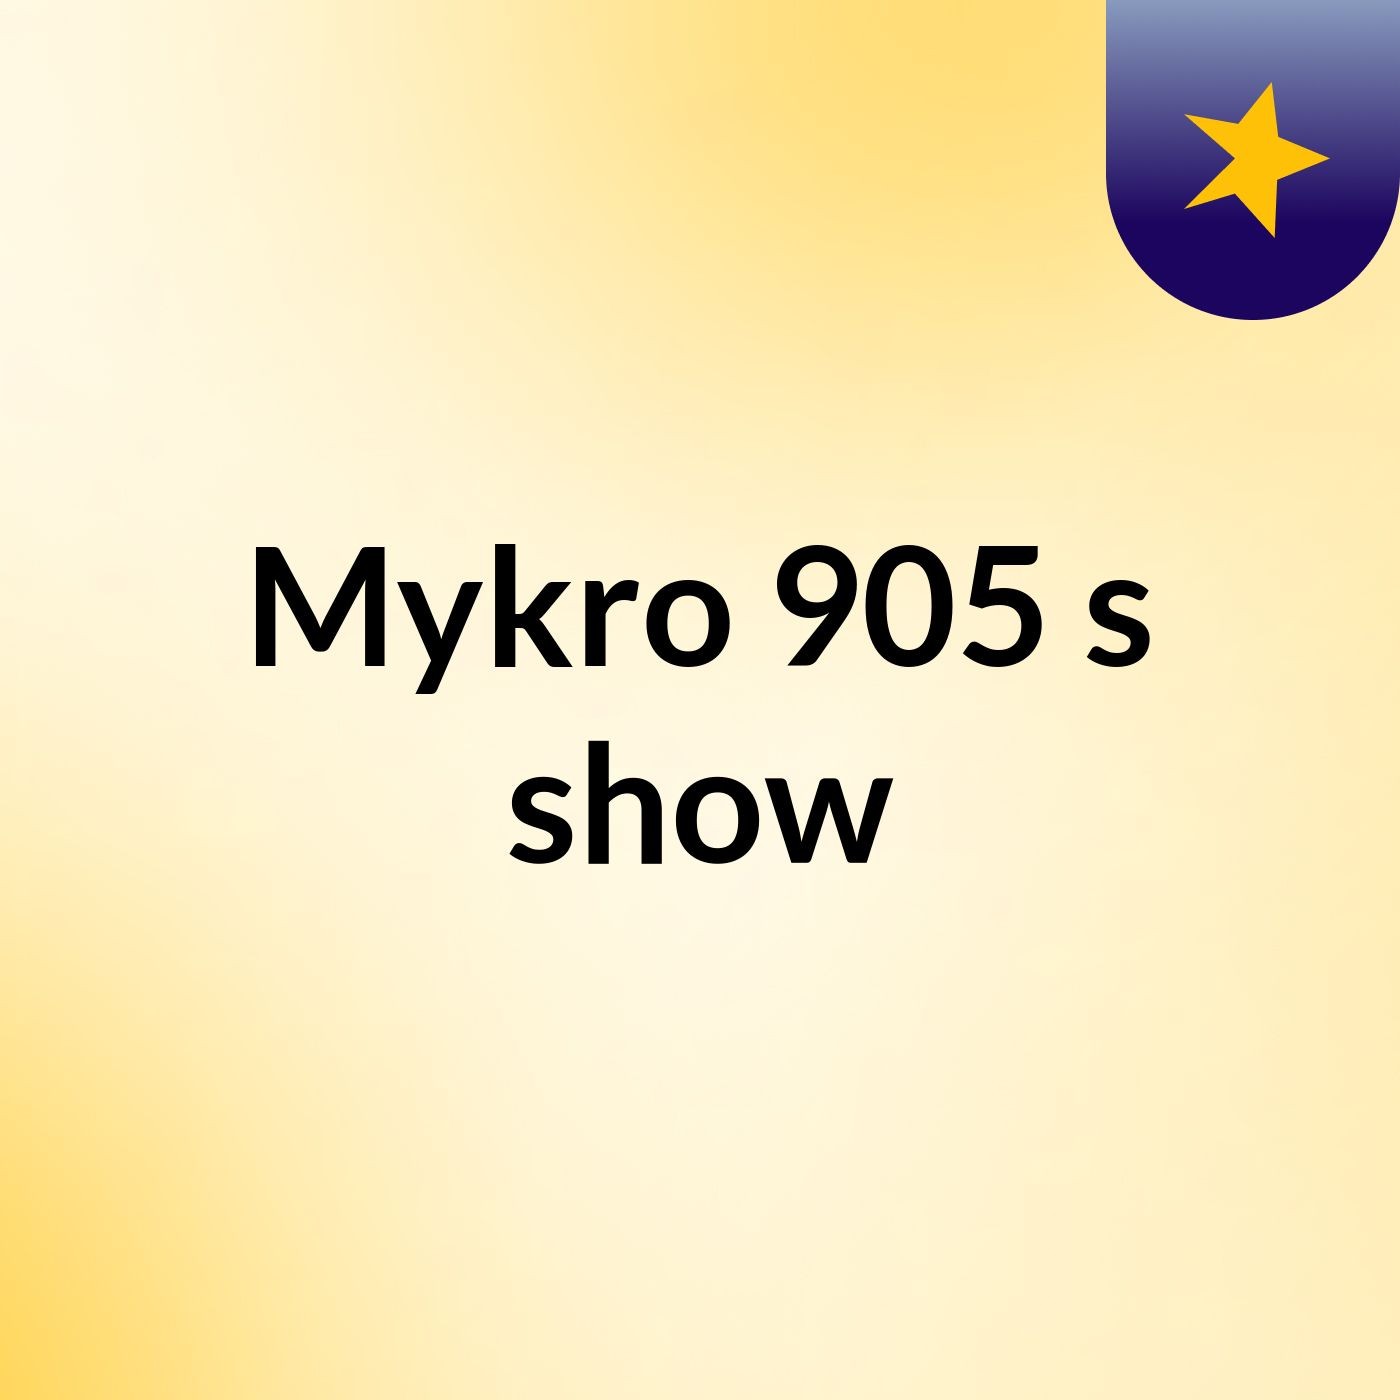 Mykro 905's show